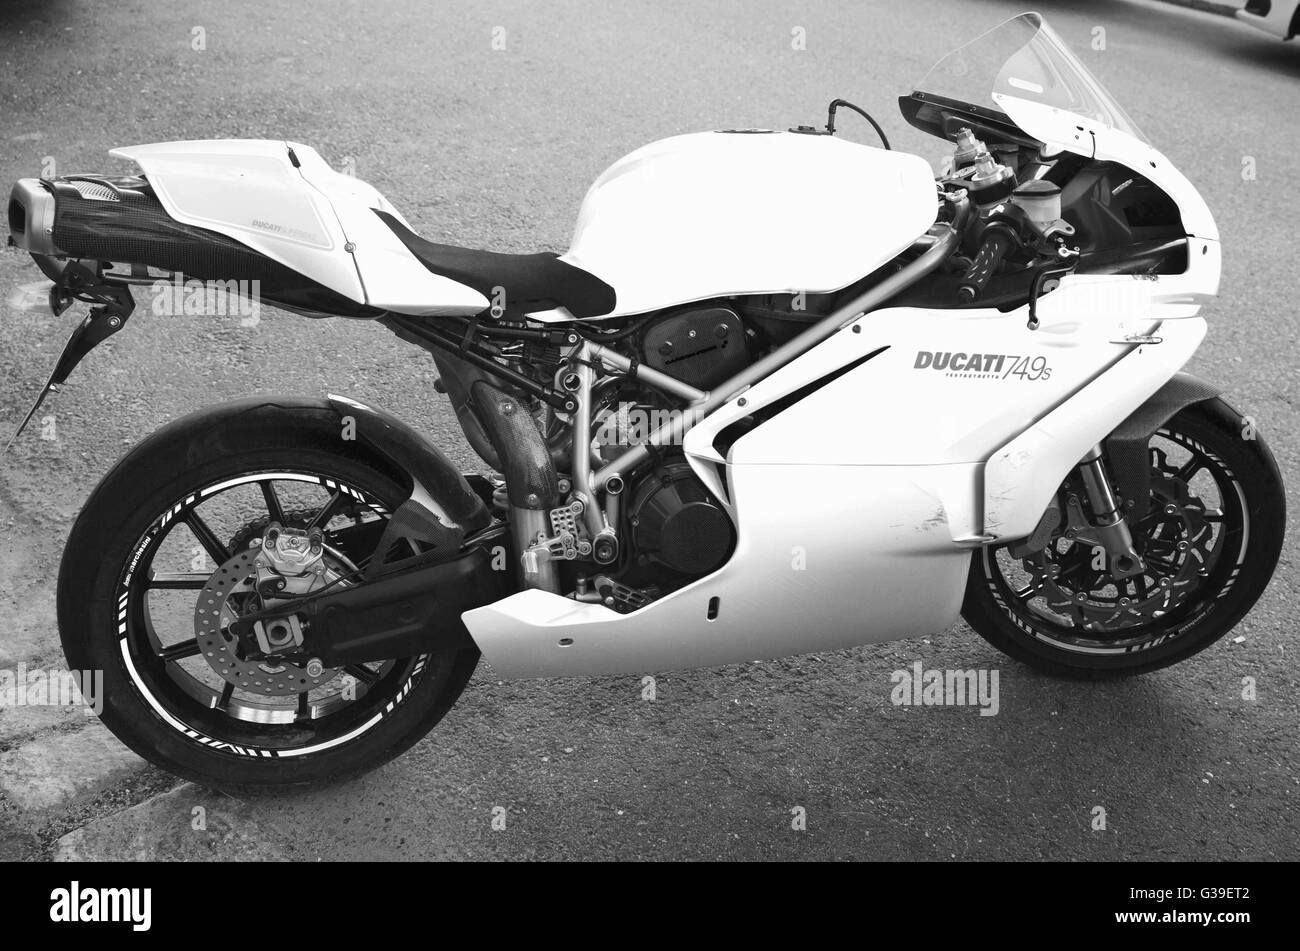 Helsinki, Finnland - 21. Mai 2016: Super bike Ducati 749, es ist ein V-Twin desmodromische Ventil betätigt Motor Sport Bike von Ducati Stockfoto